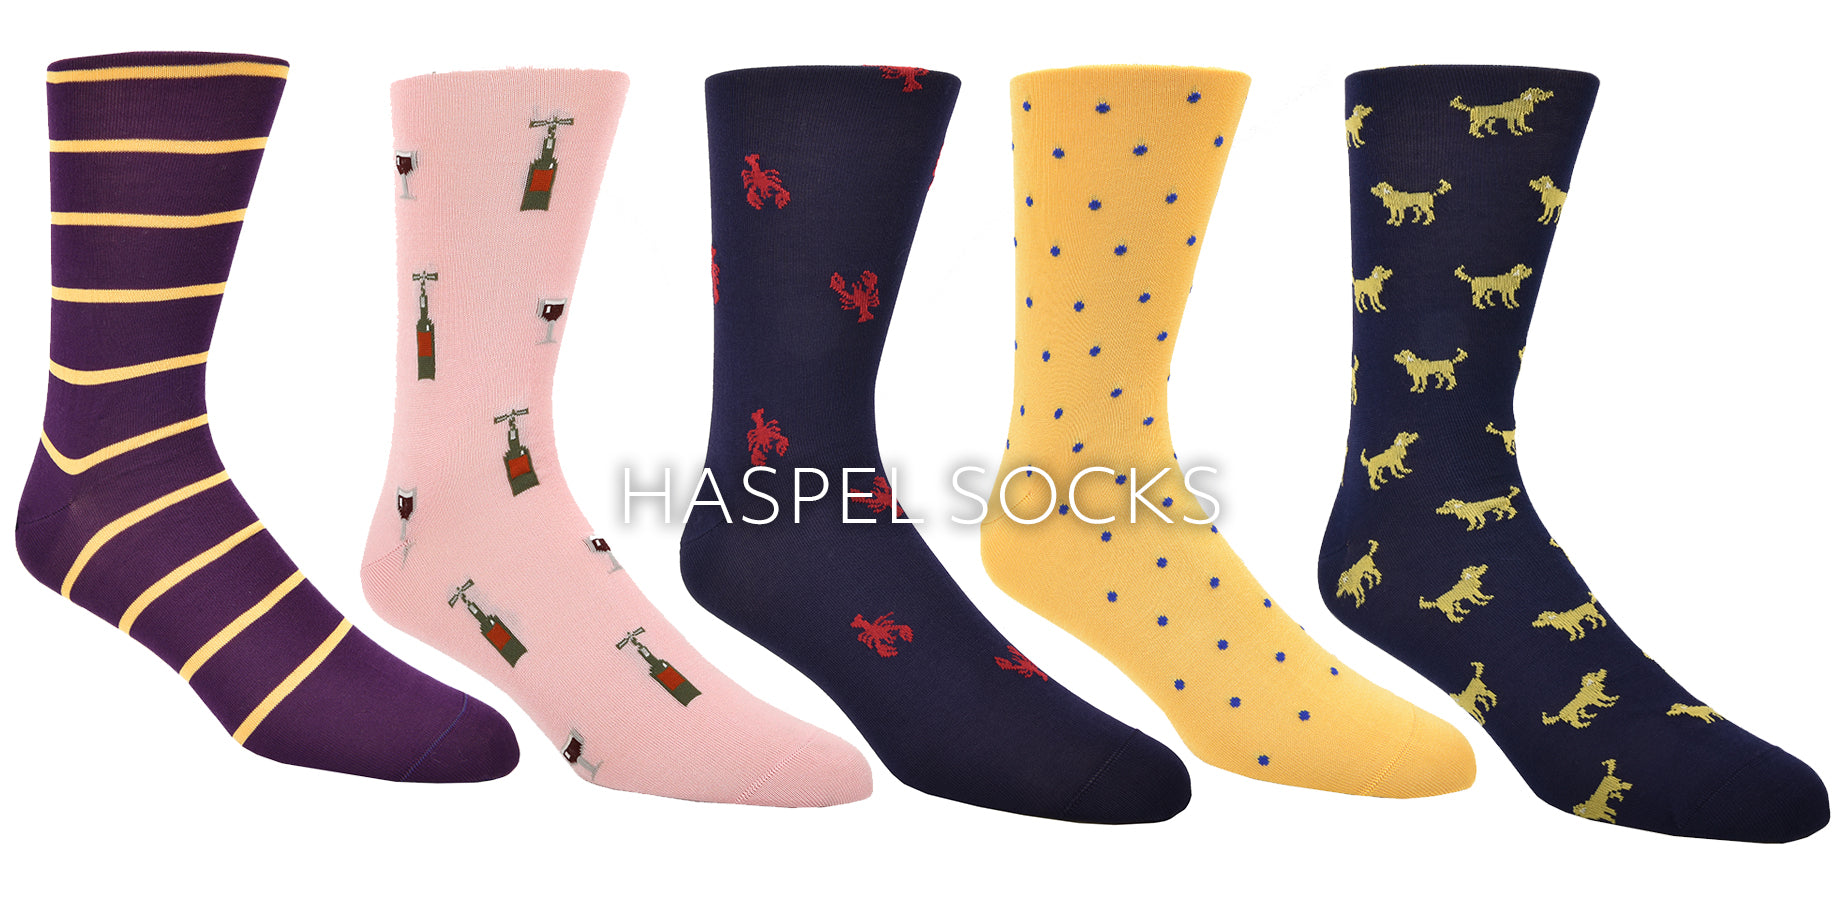 Haspel Socks